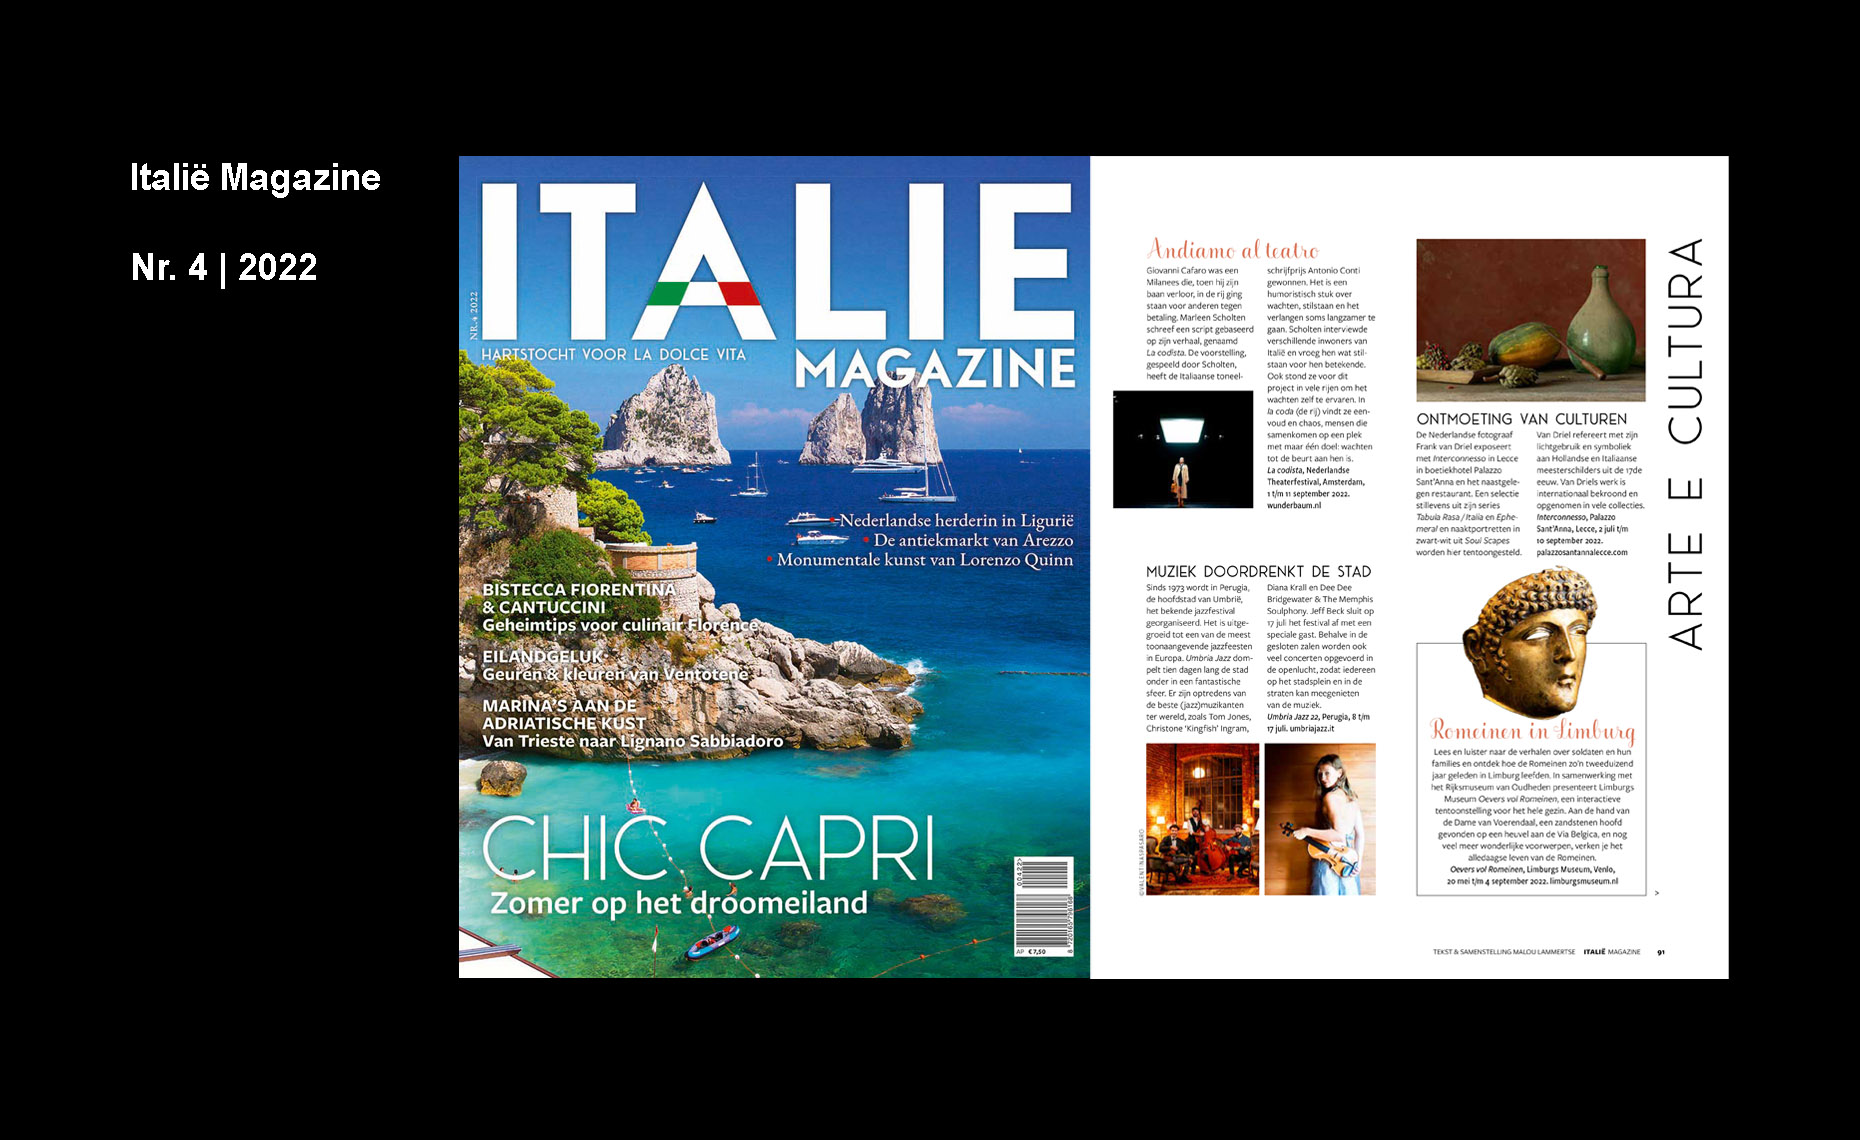 Italië Magazine
 
Nr. 4 | 2022